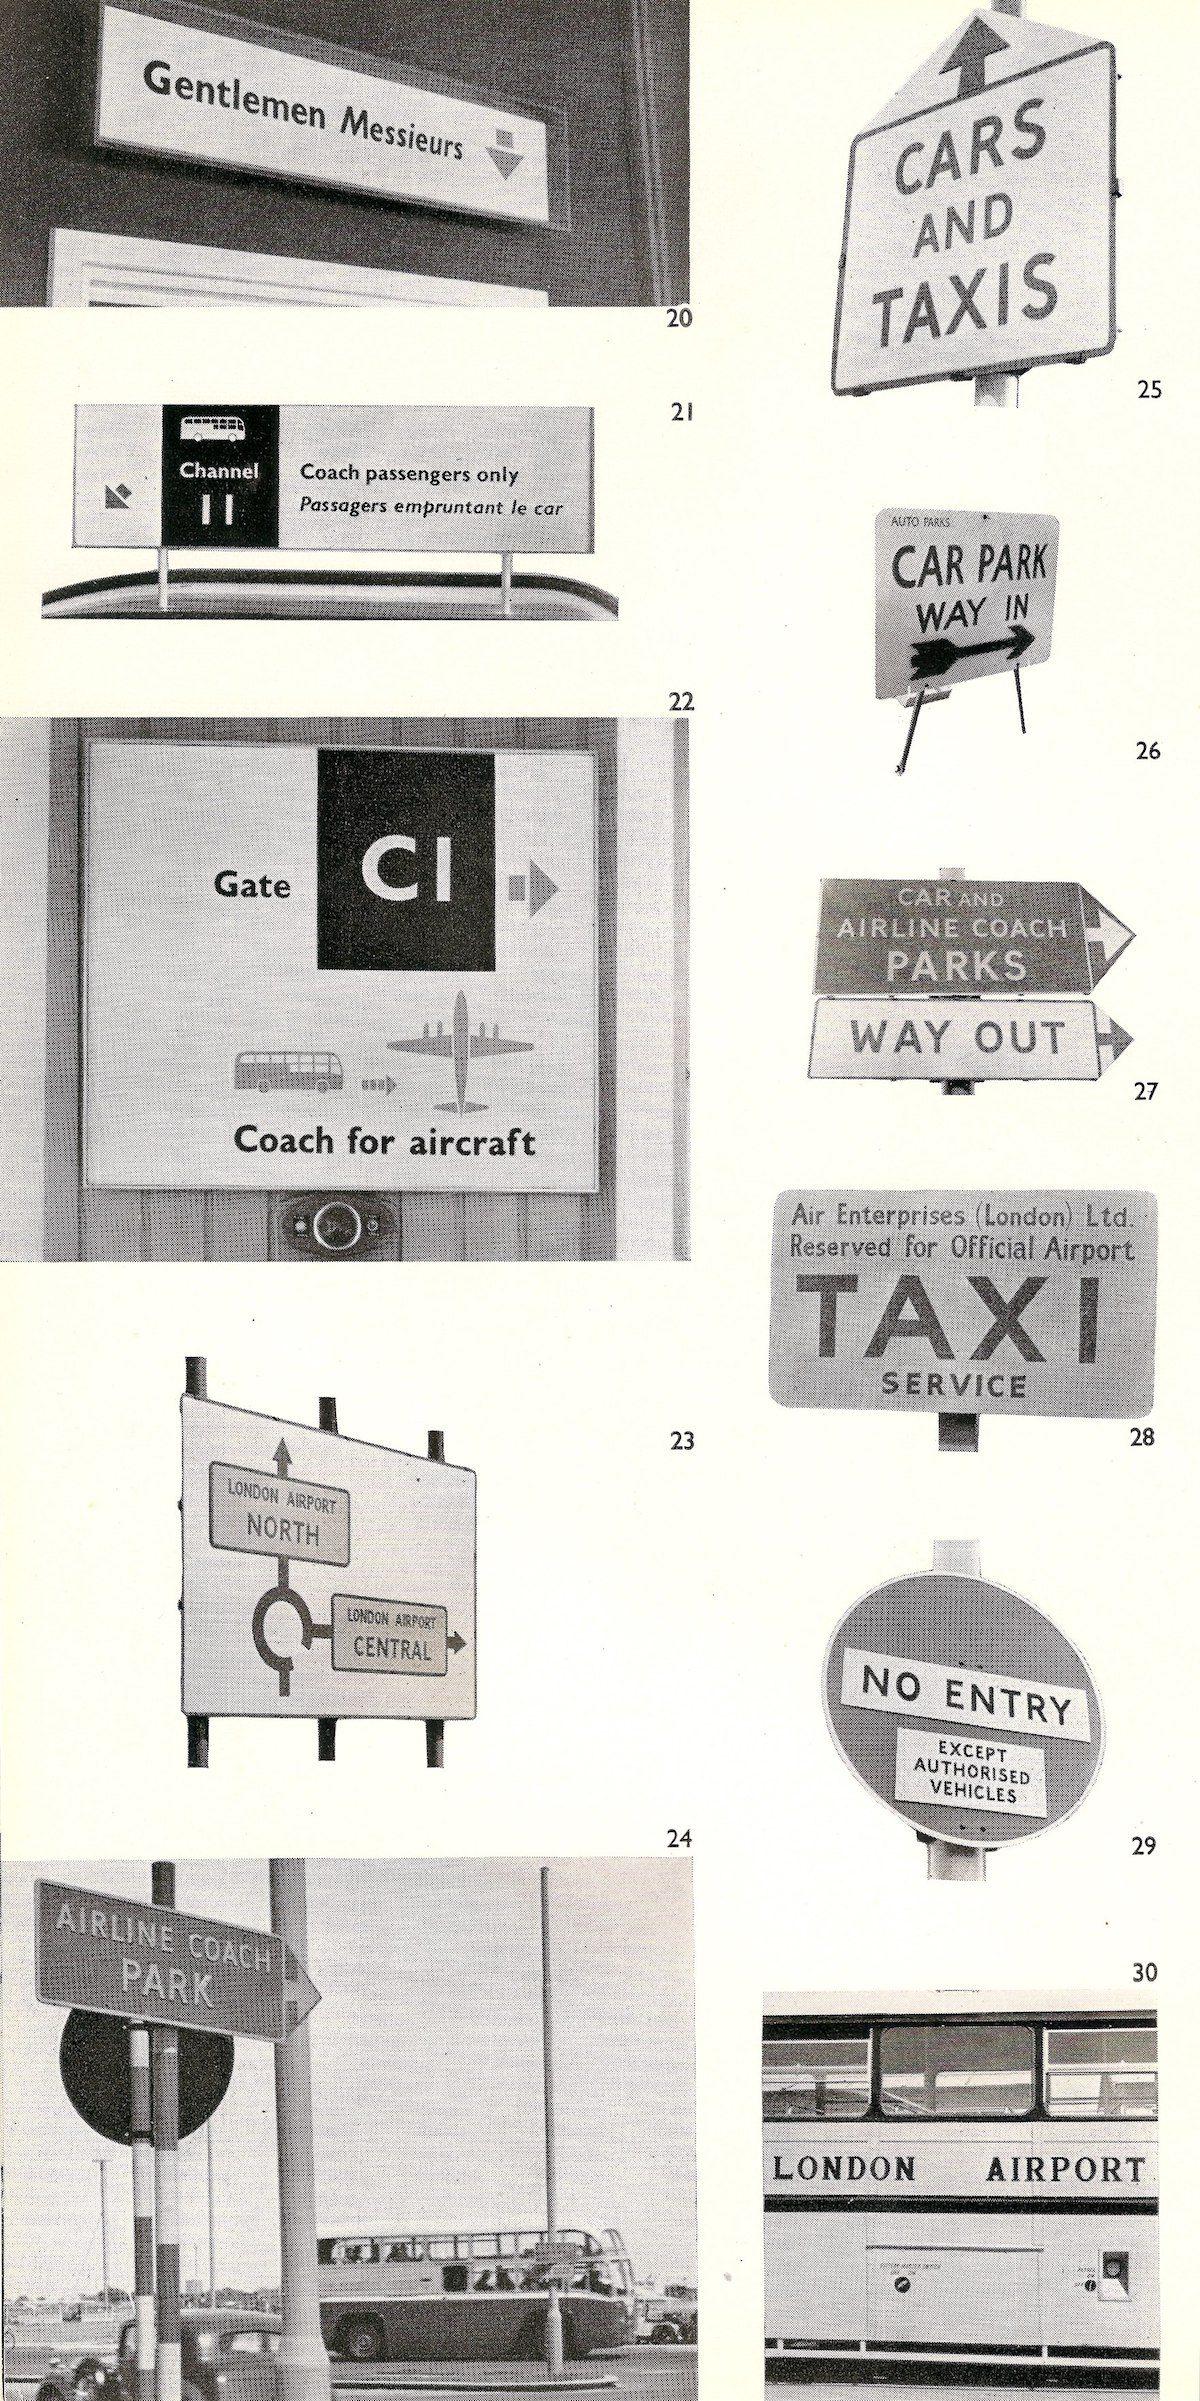 The London Airport Official Guide, 1956 - Illustré par Feliks Topolski et Cullen Gordon